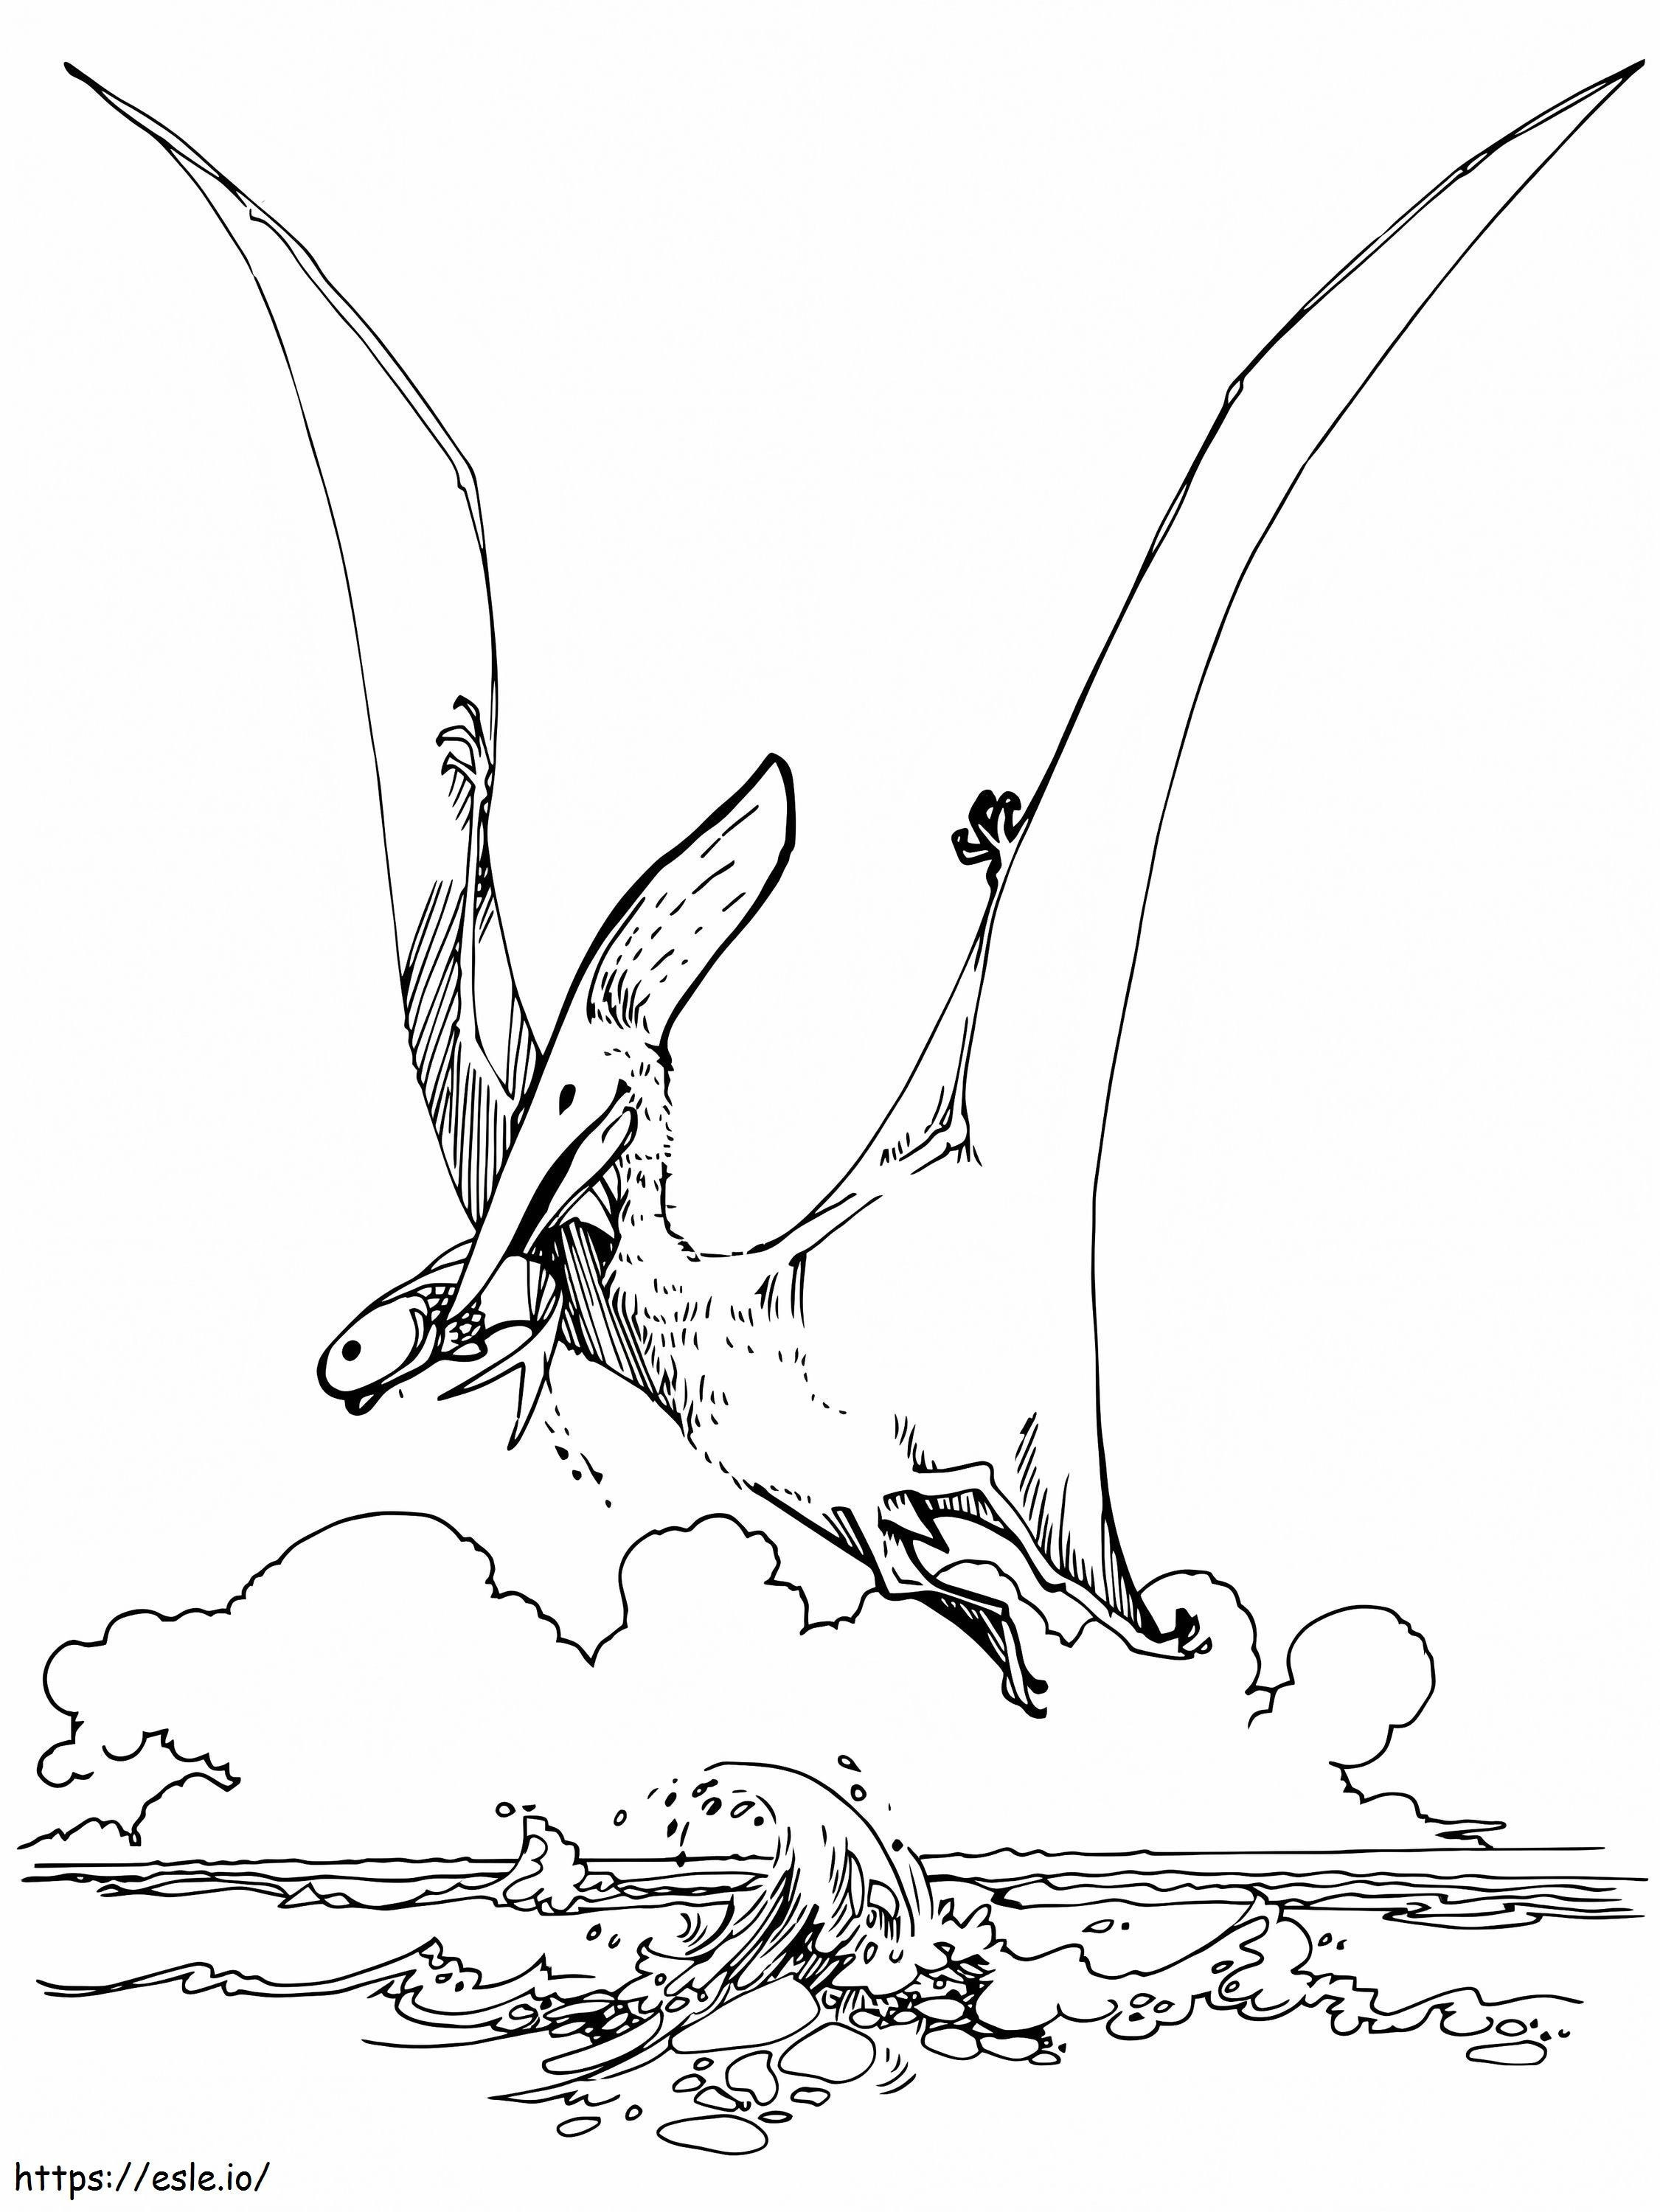 Dinosaure Pteranodon coloring page